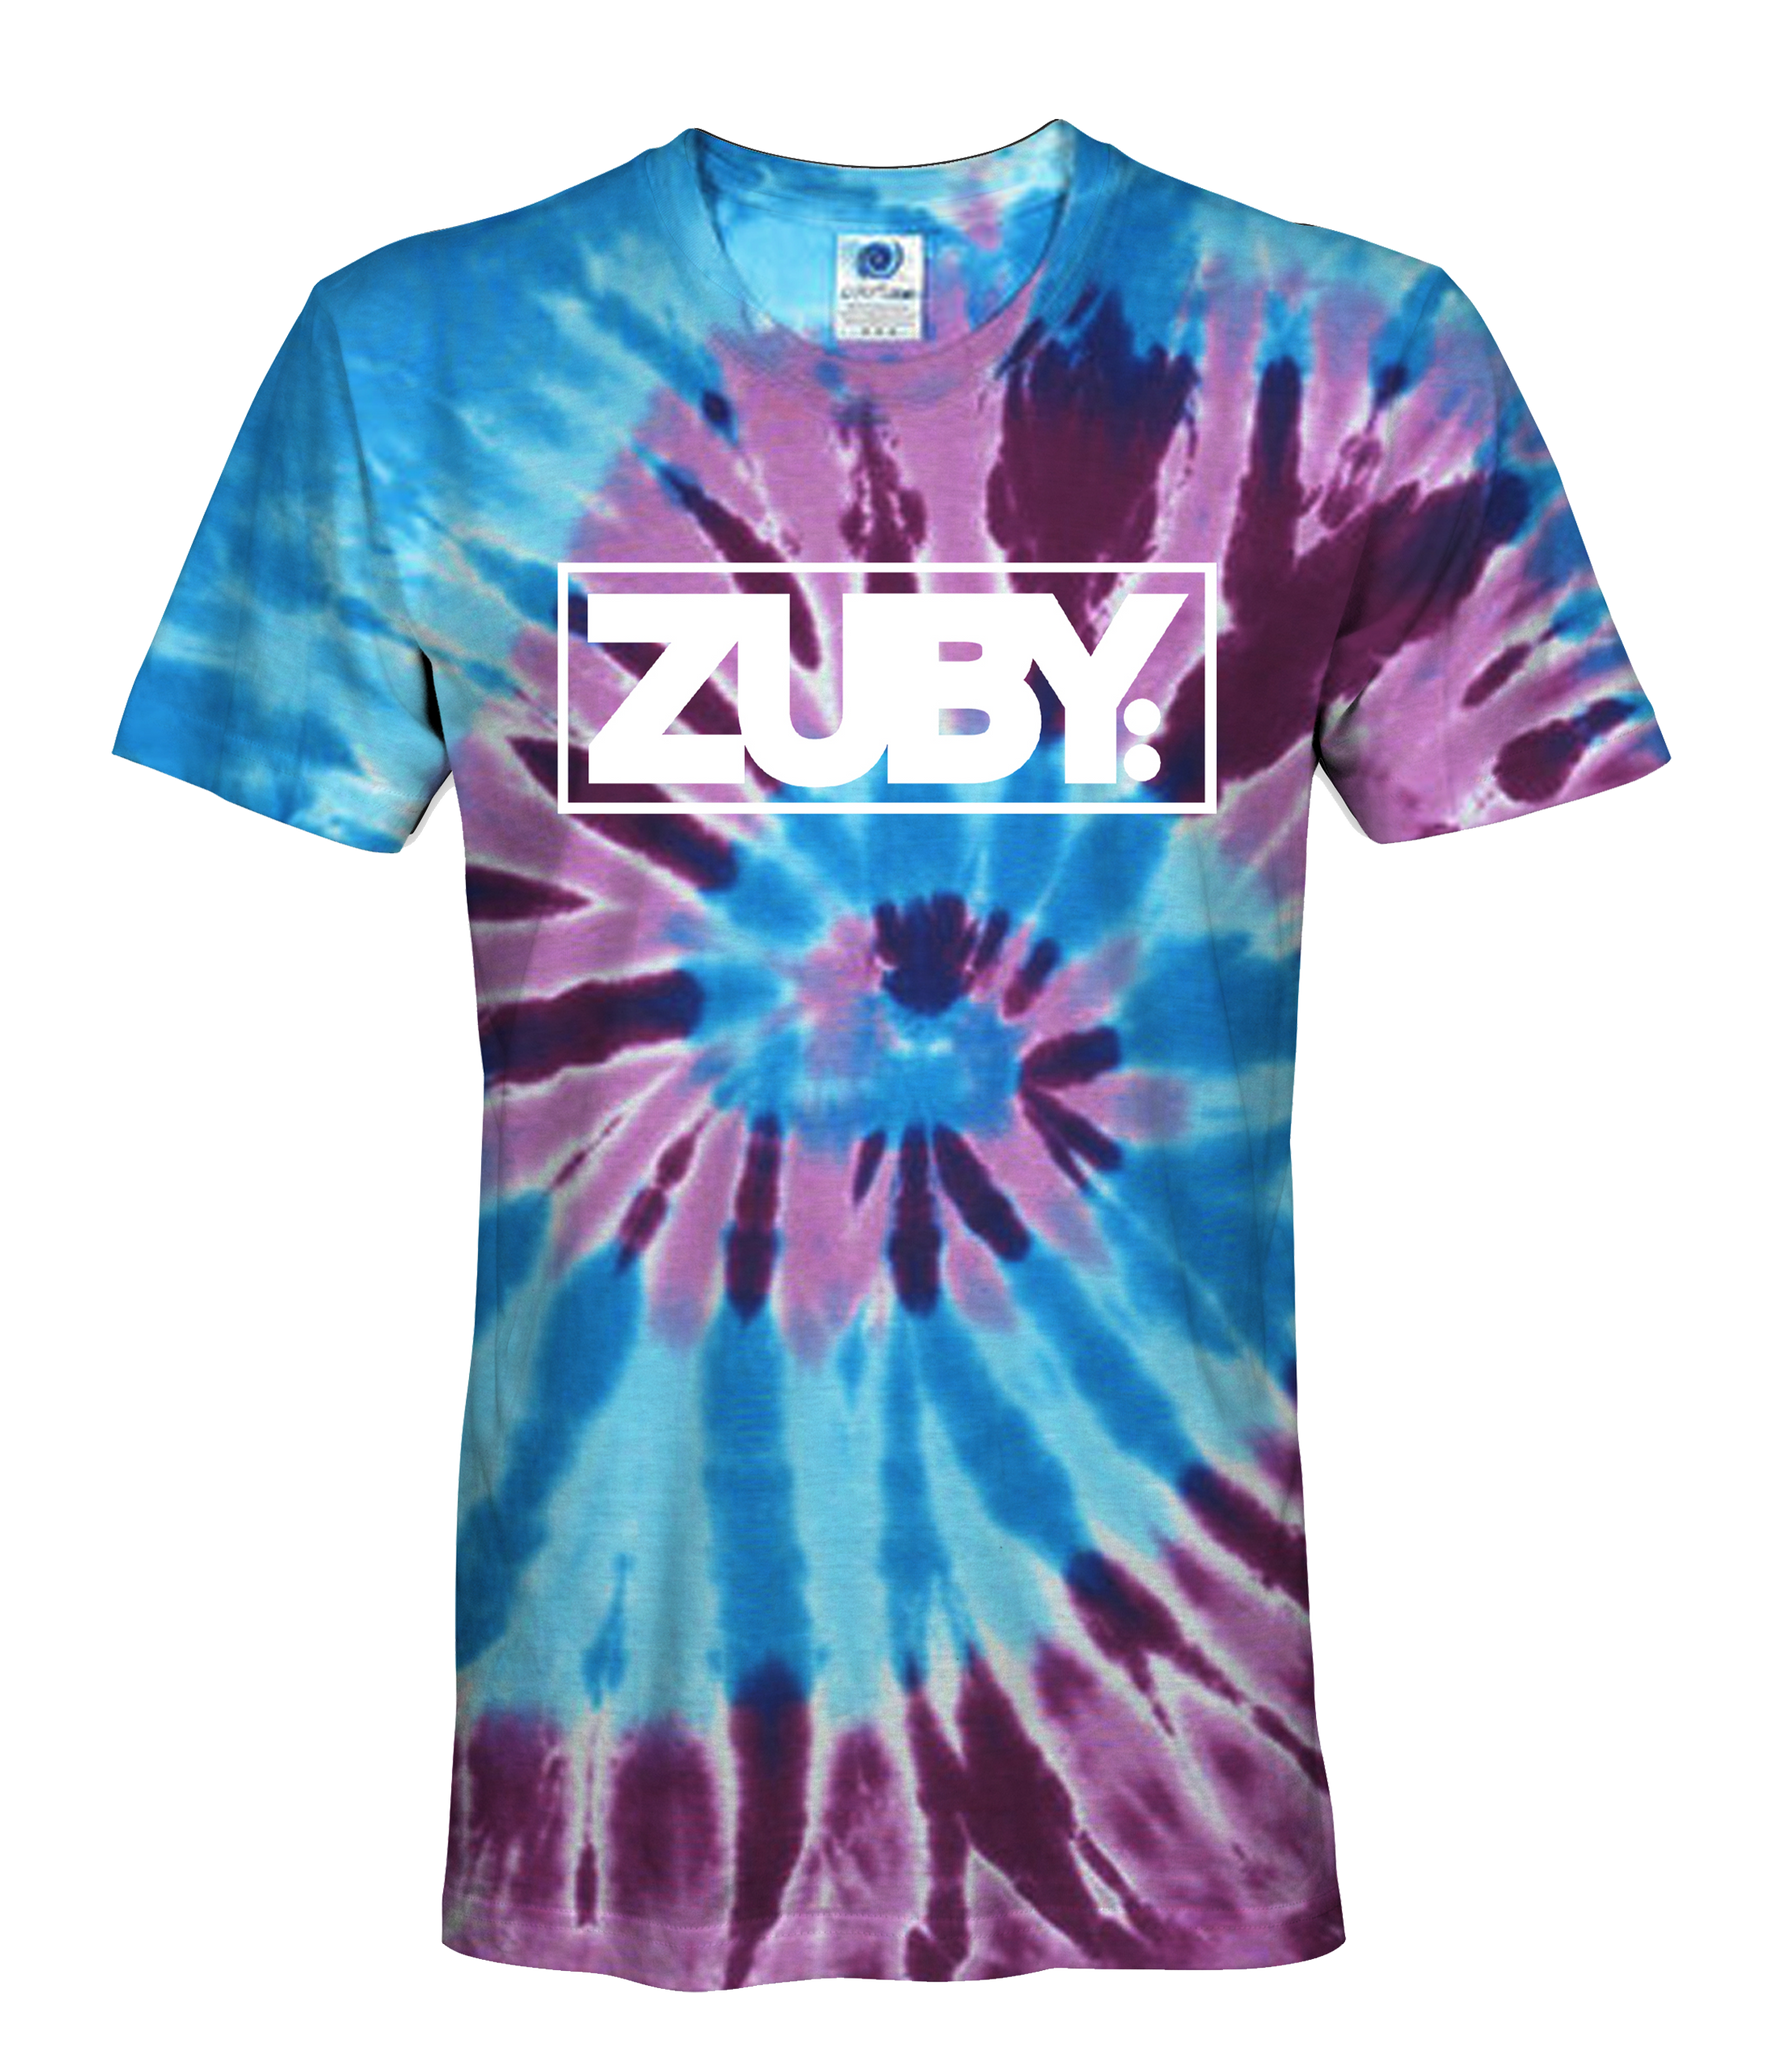 Zuby Classic Tie Dye T-Shirt (Blue/Purple Swirl)